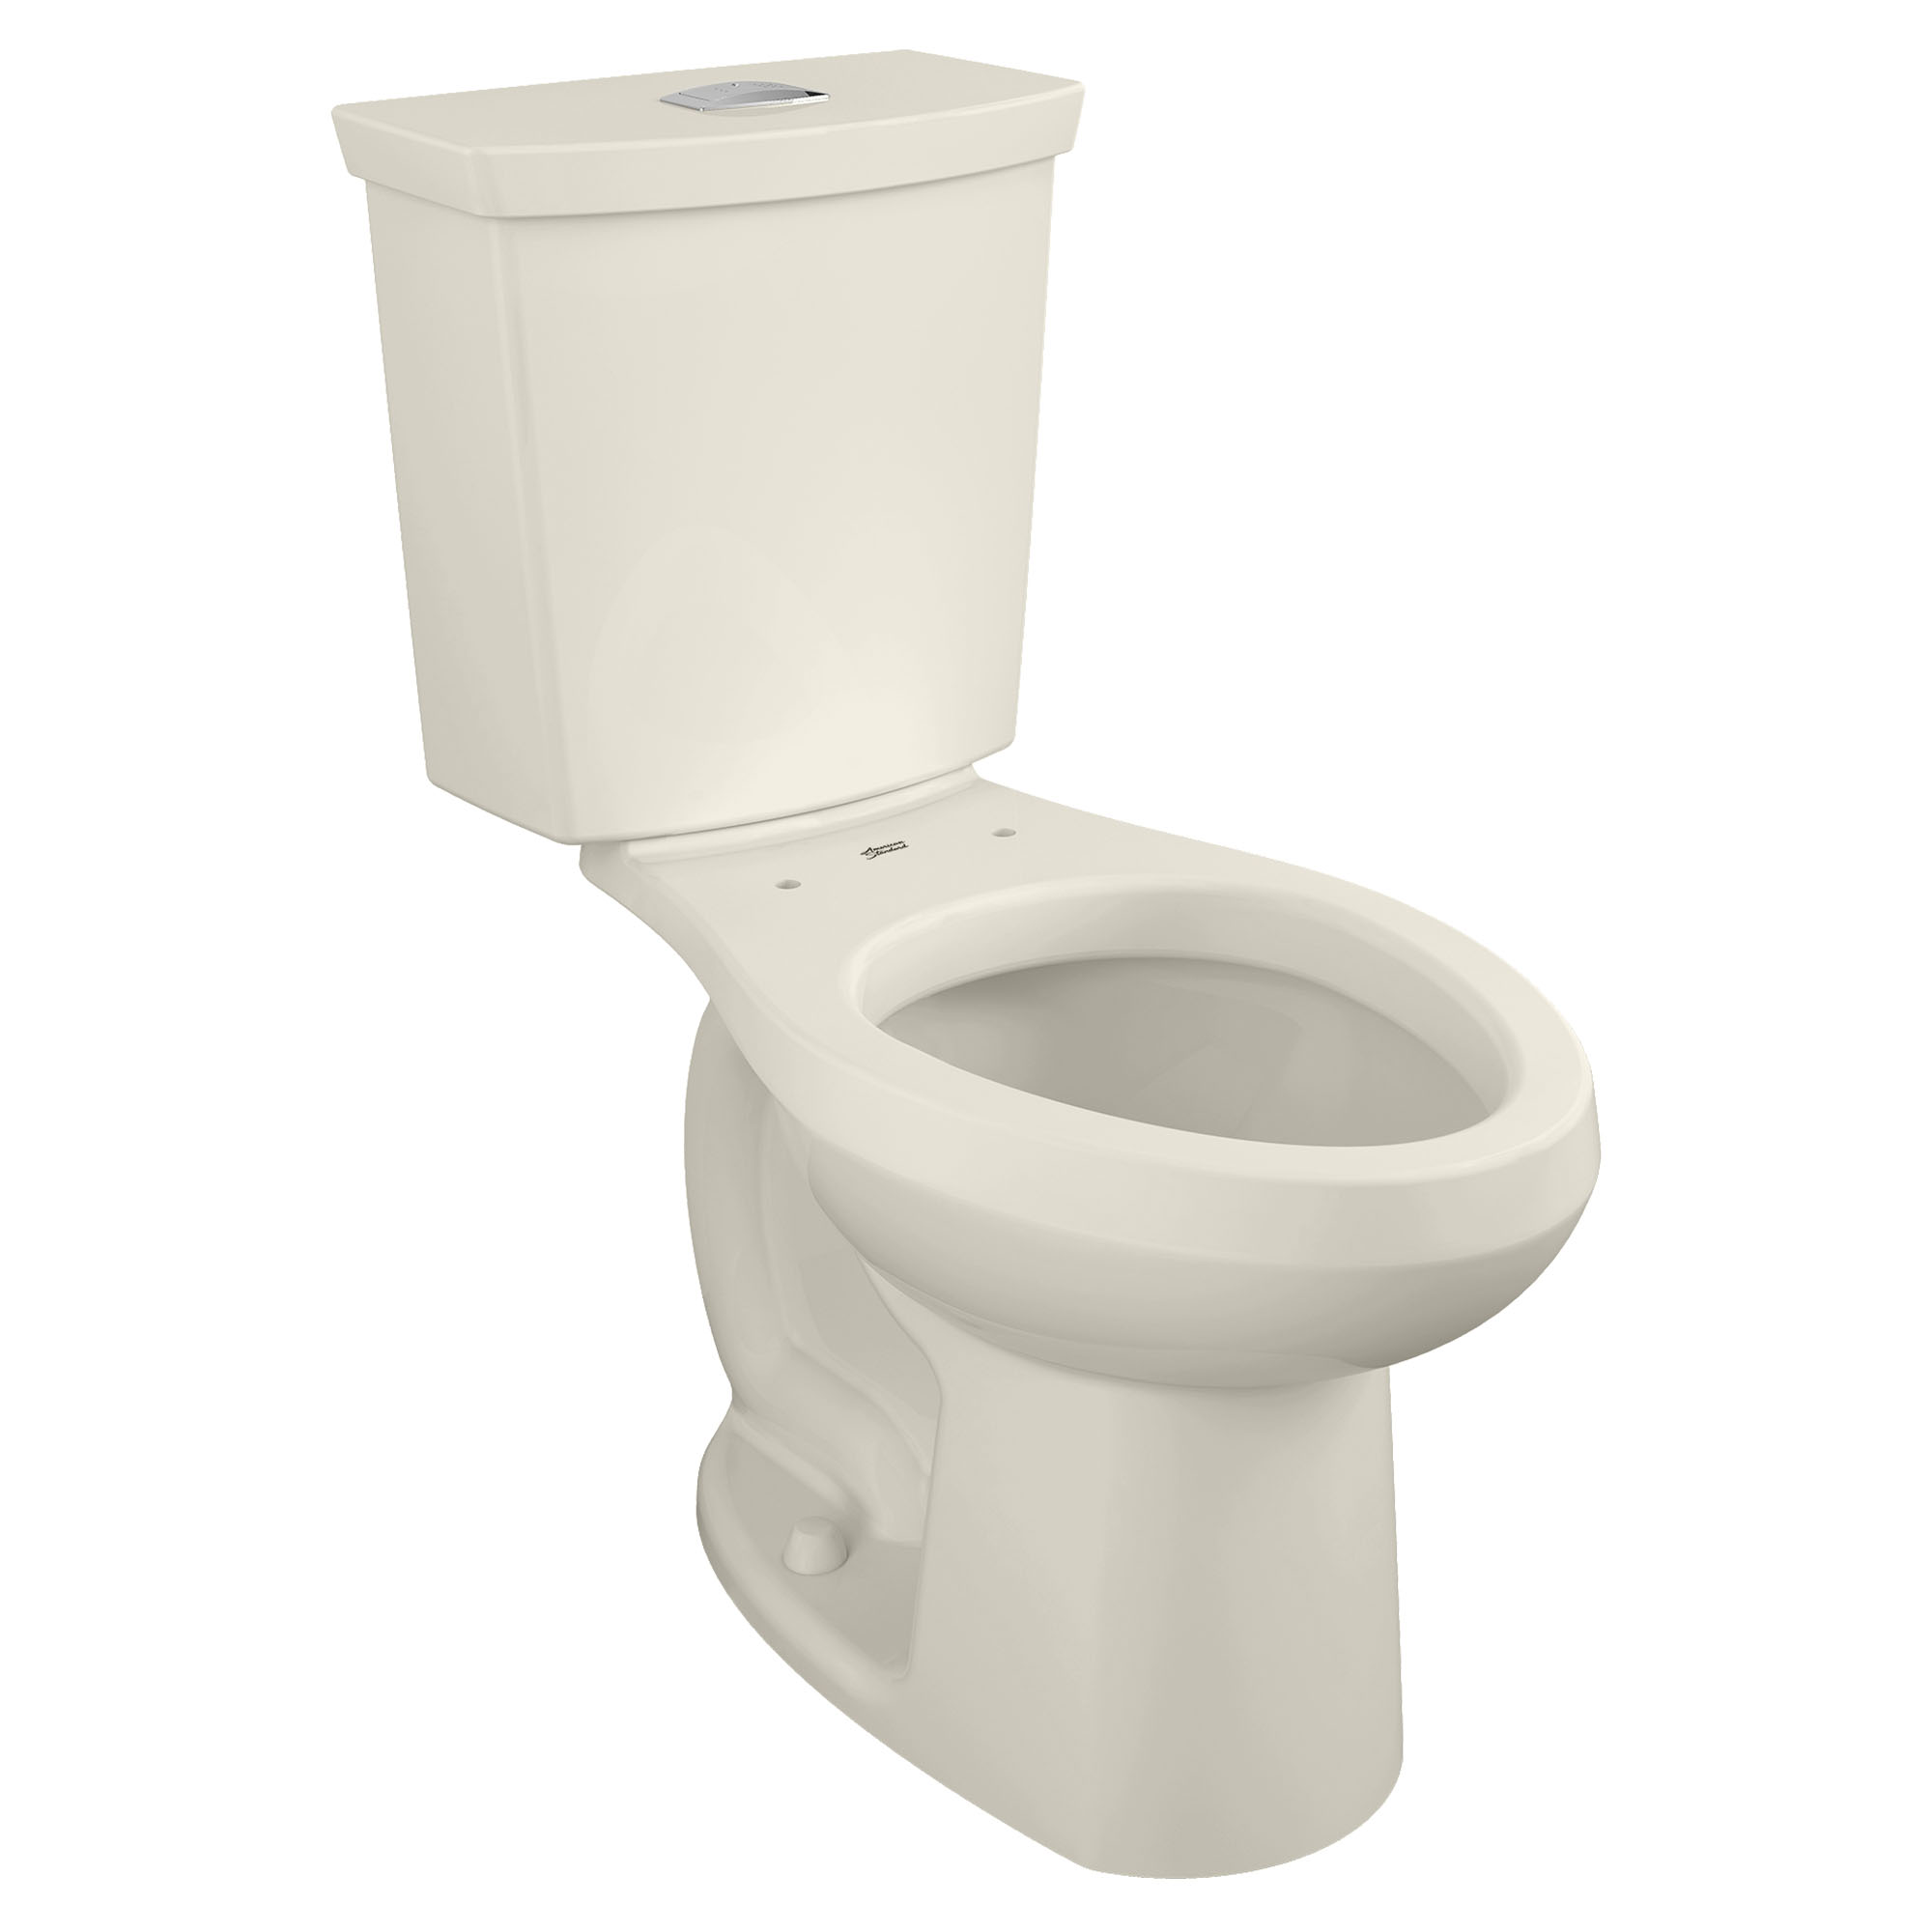 Toilette H2Option, 2 pièces, chasse double 1,28 gpc/4,8 lpc et 0,92 gpc/3,5 lpc, à cuvette allongée à hauteur de chaise et réservoir avec doublure, sans siège